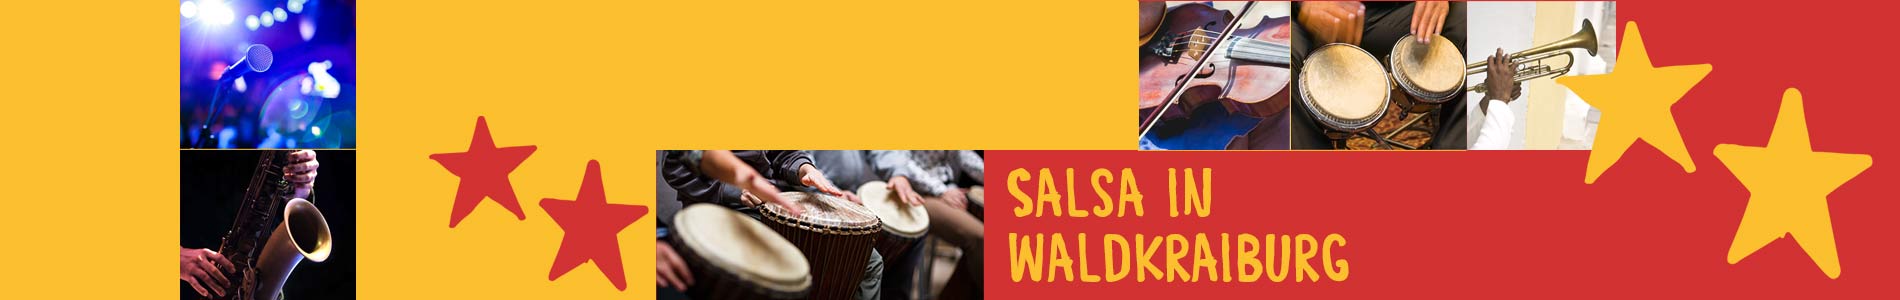 Salsa in Waldkraiburg – Salsa lernen und tanzen, Tanzkurse, Partys, Veranstaltungen